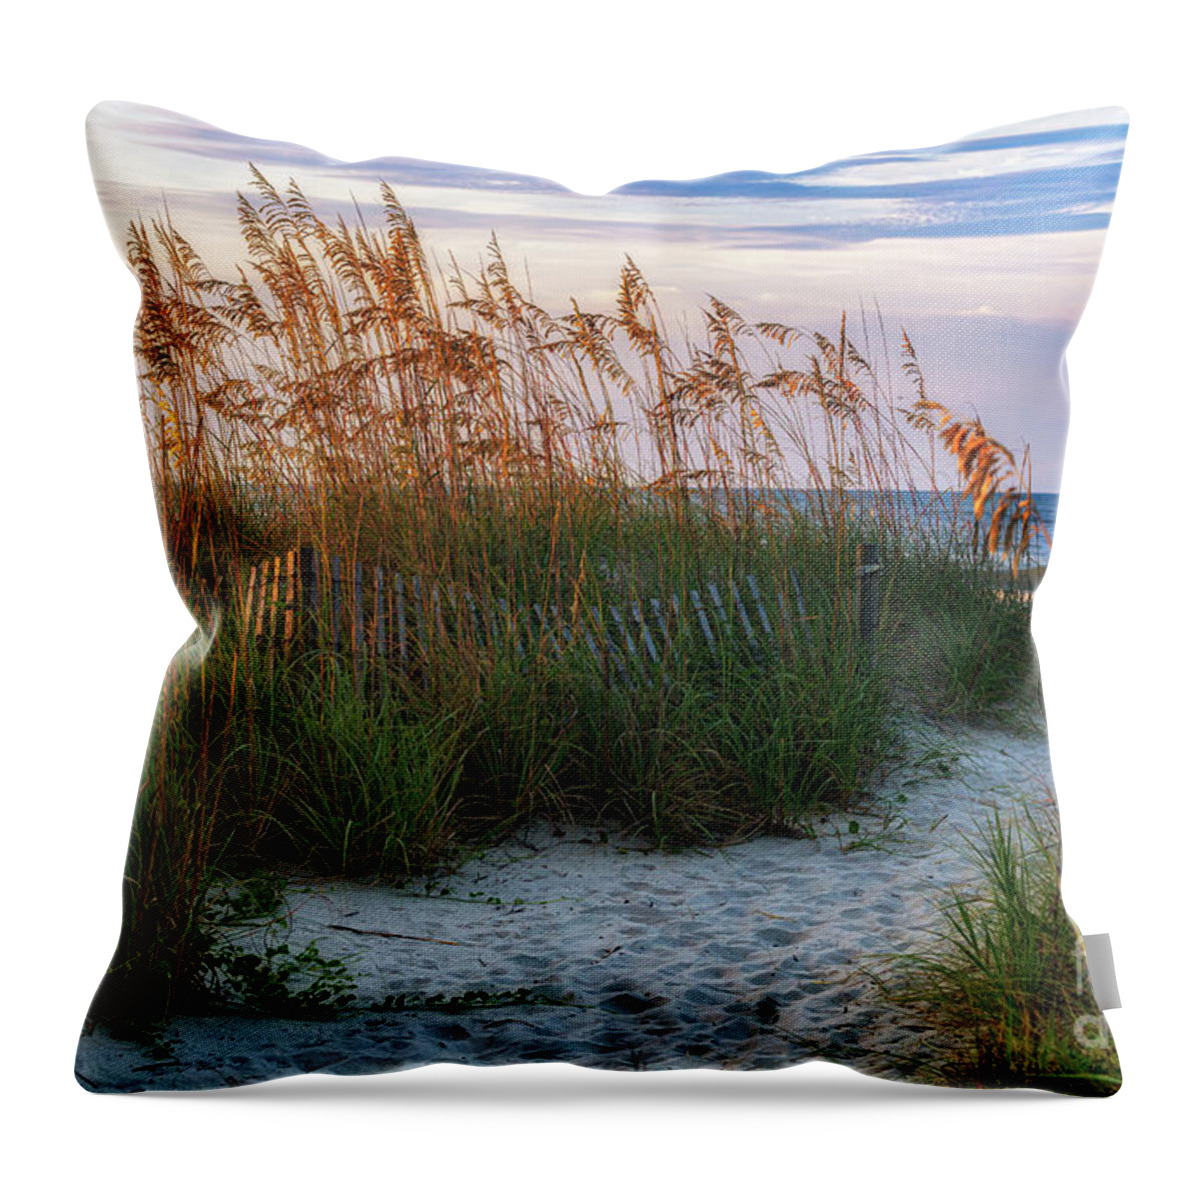 Beach Path Throw Pillow featuring the photograph Beach Path Ocean Drive by David Smith